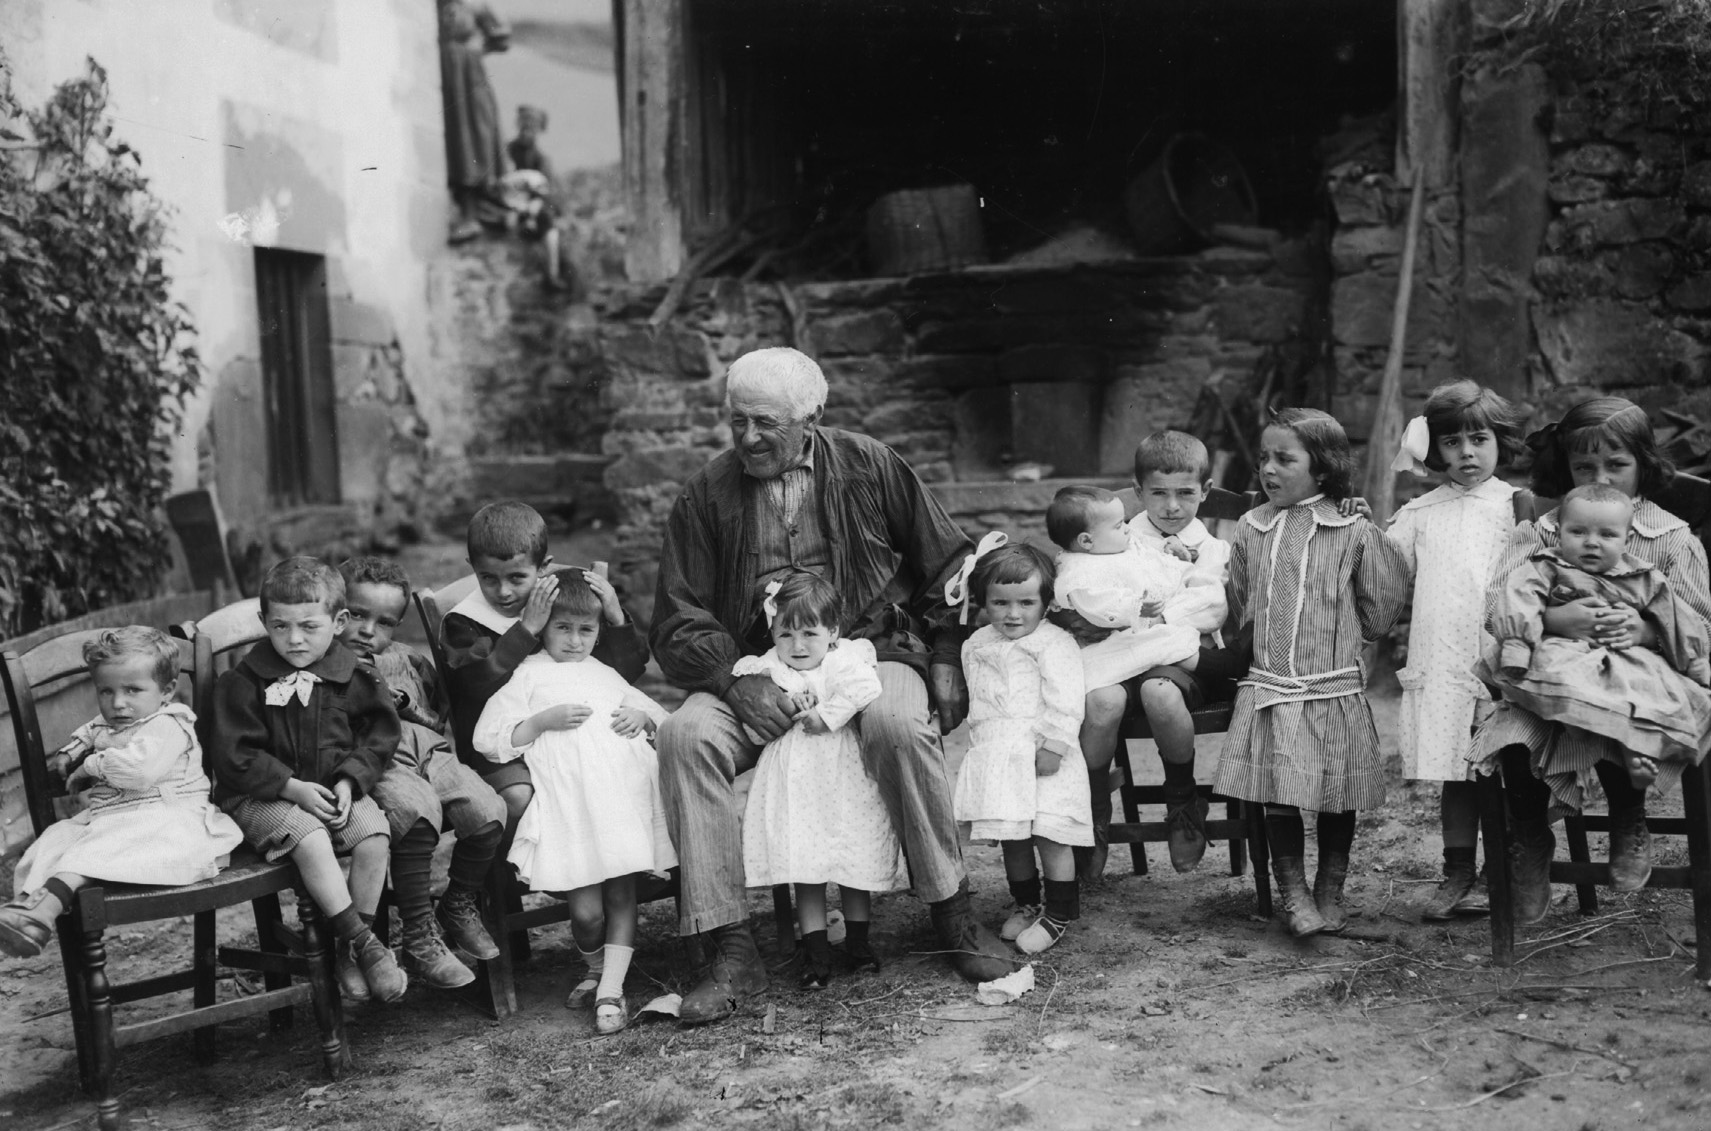 Con los nietos. Zeanuri (Bizkaia), c. 1910. Felipe Manterola